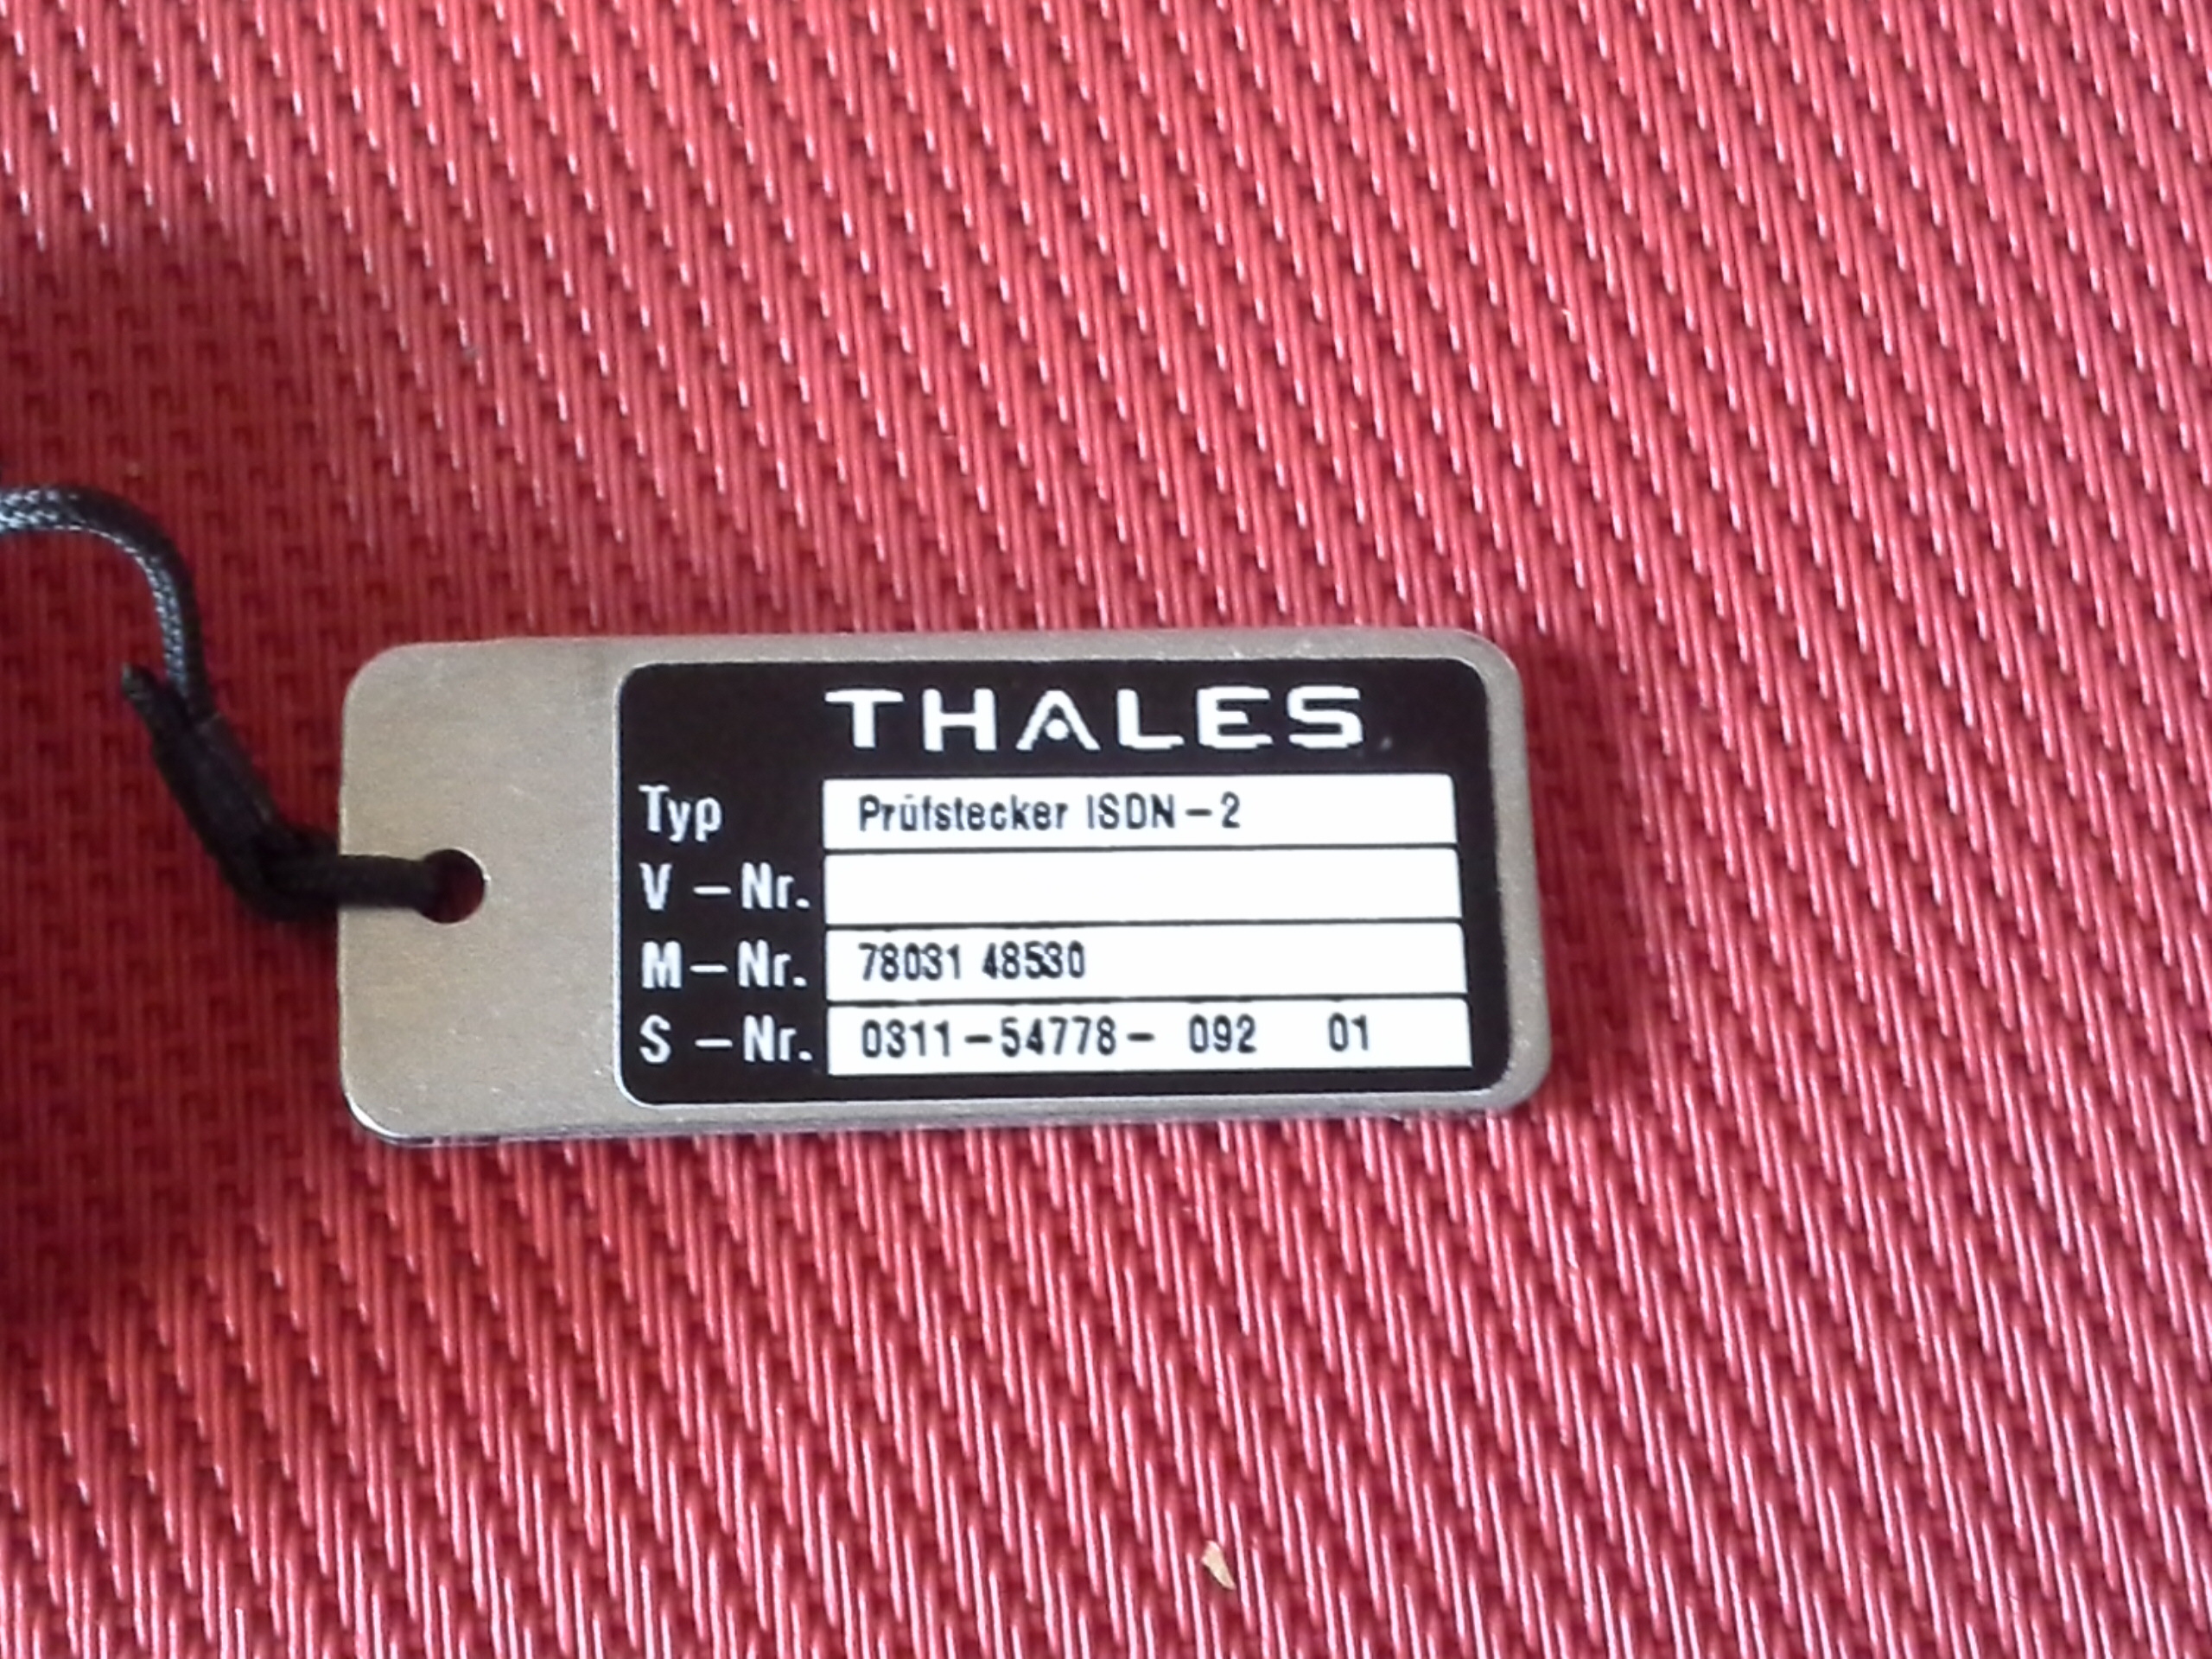 Thales Prüfstecker ISDN-2